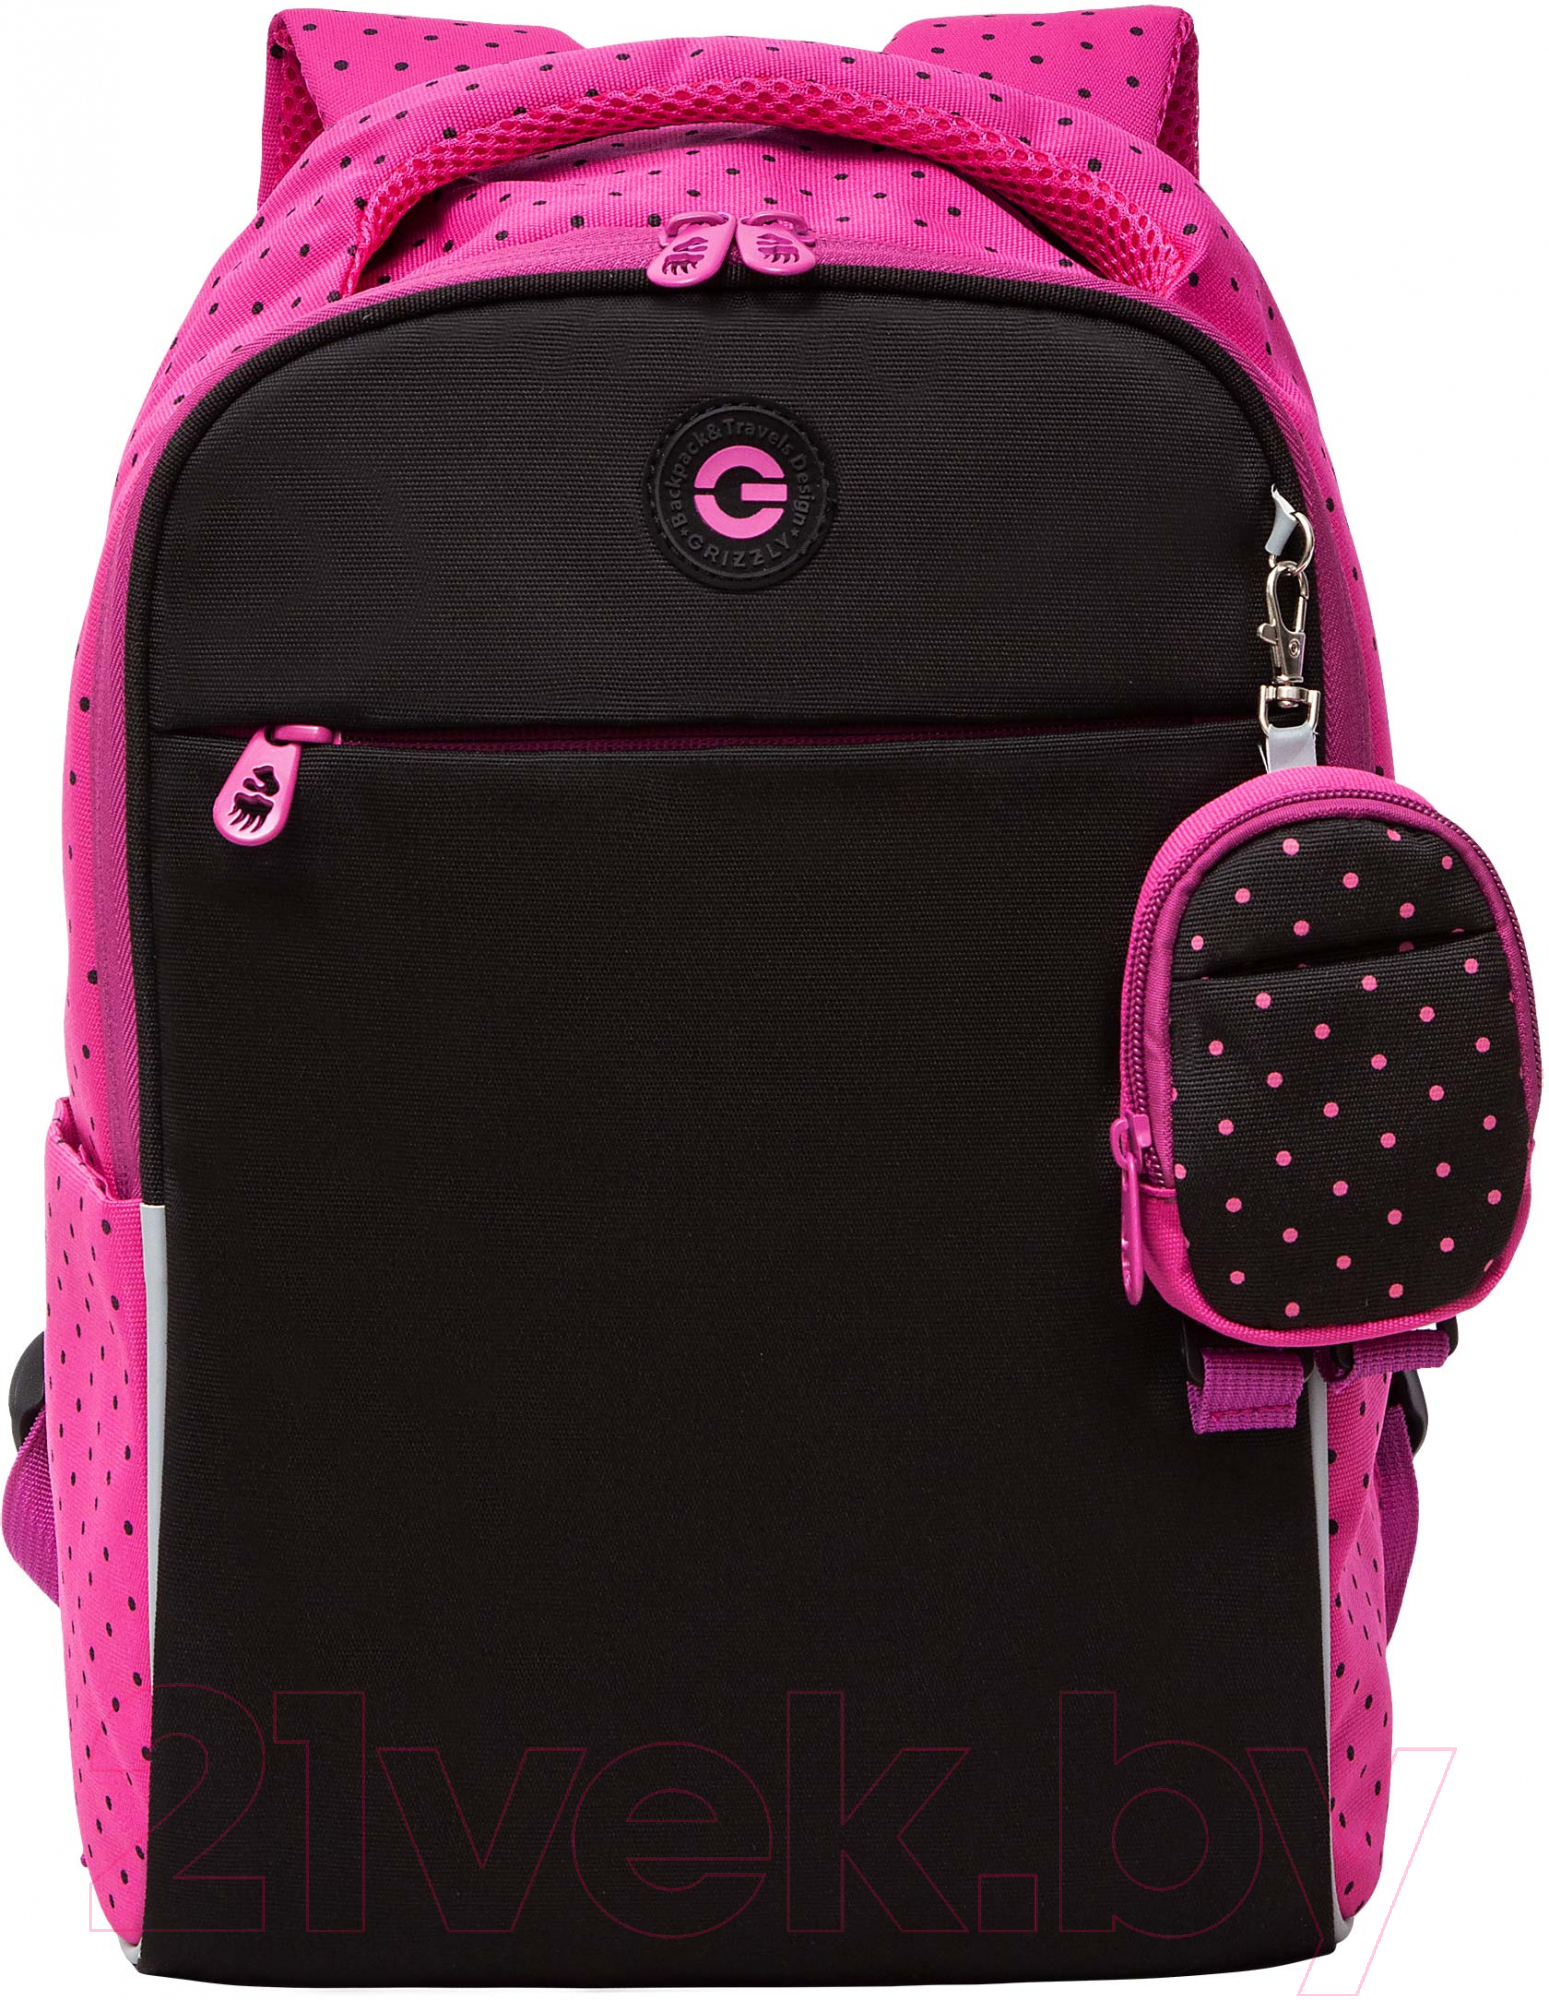 Школьный рюкзак Grizzly RG-367-2